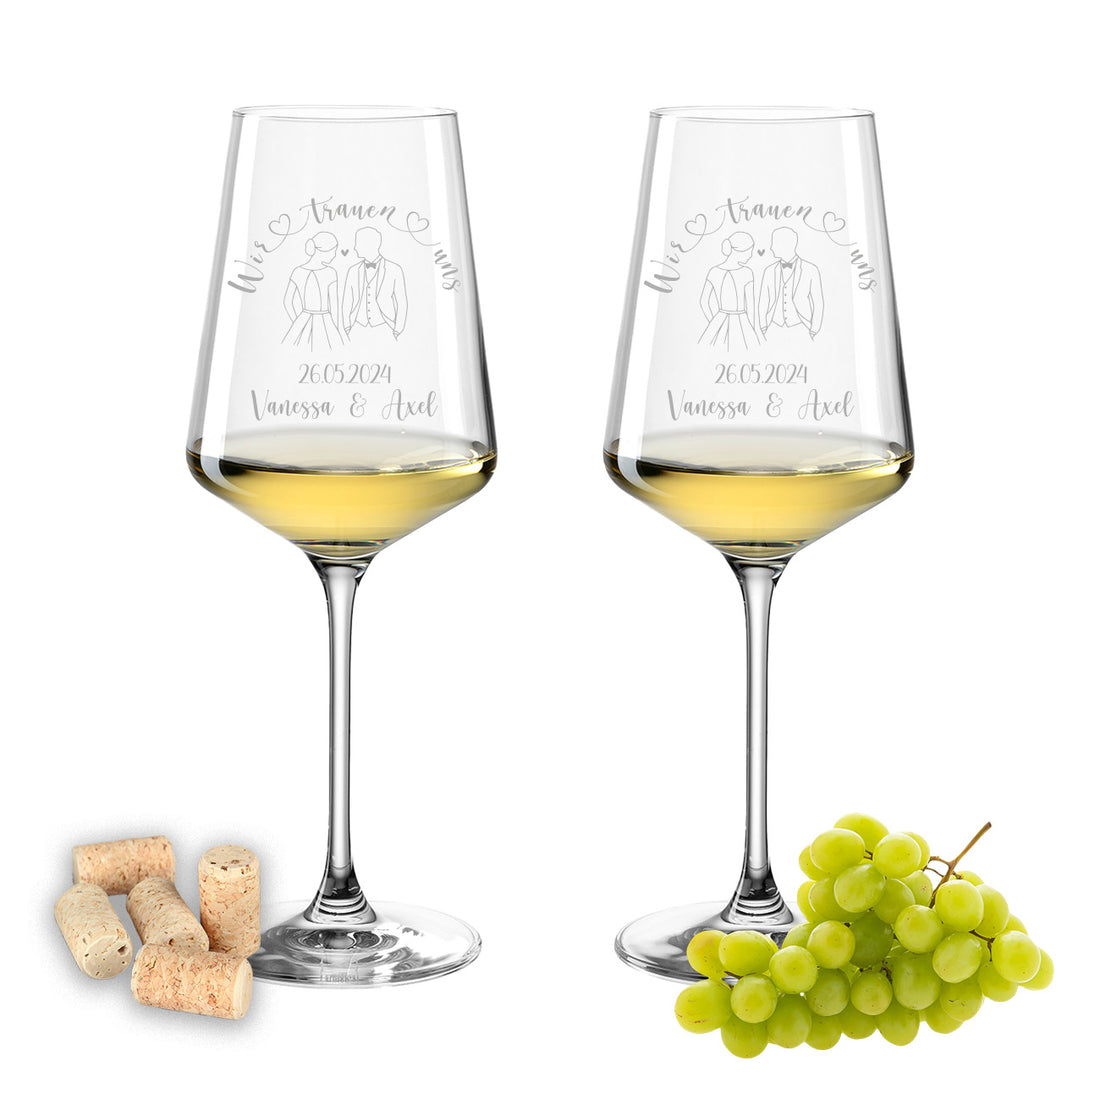 Weinglas mit Gravur Leonardo Puccini "WIR TRAUEN UNS" Motiv Brautpaar 2 Gläser mit Wunschname & Datum